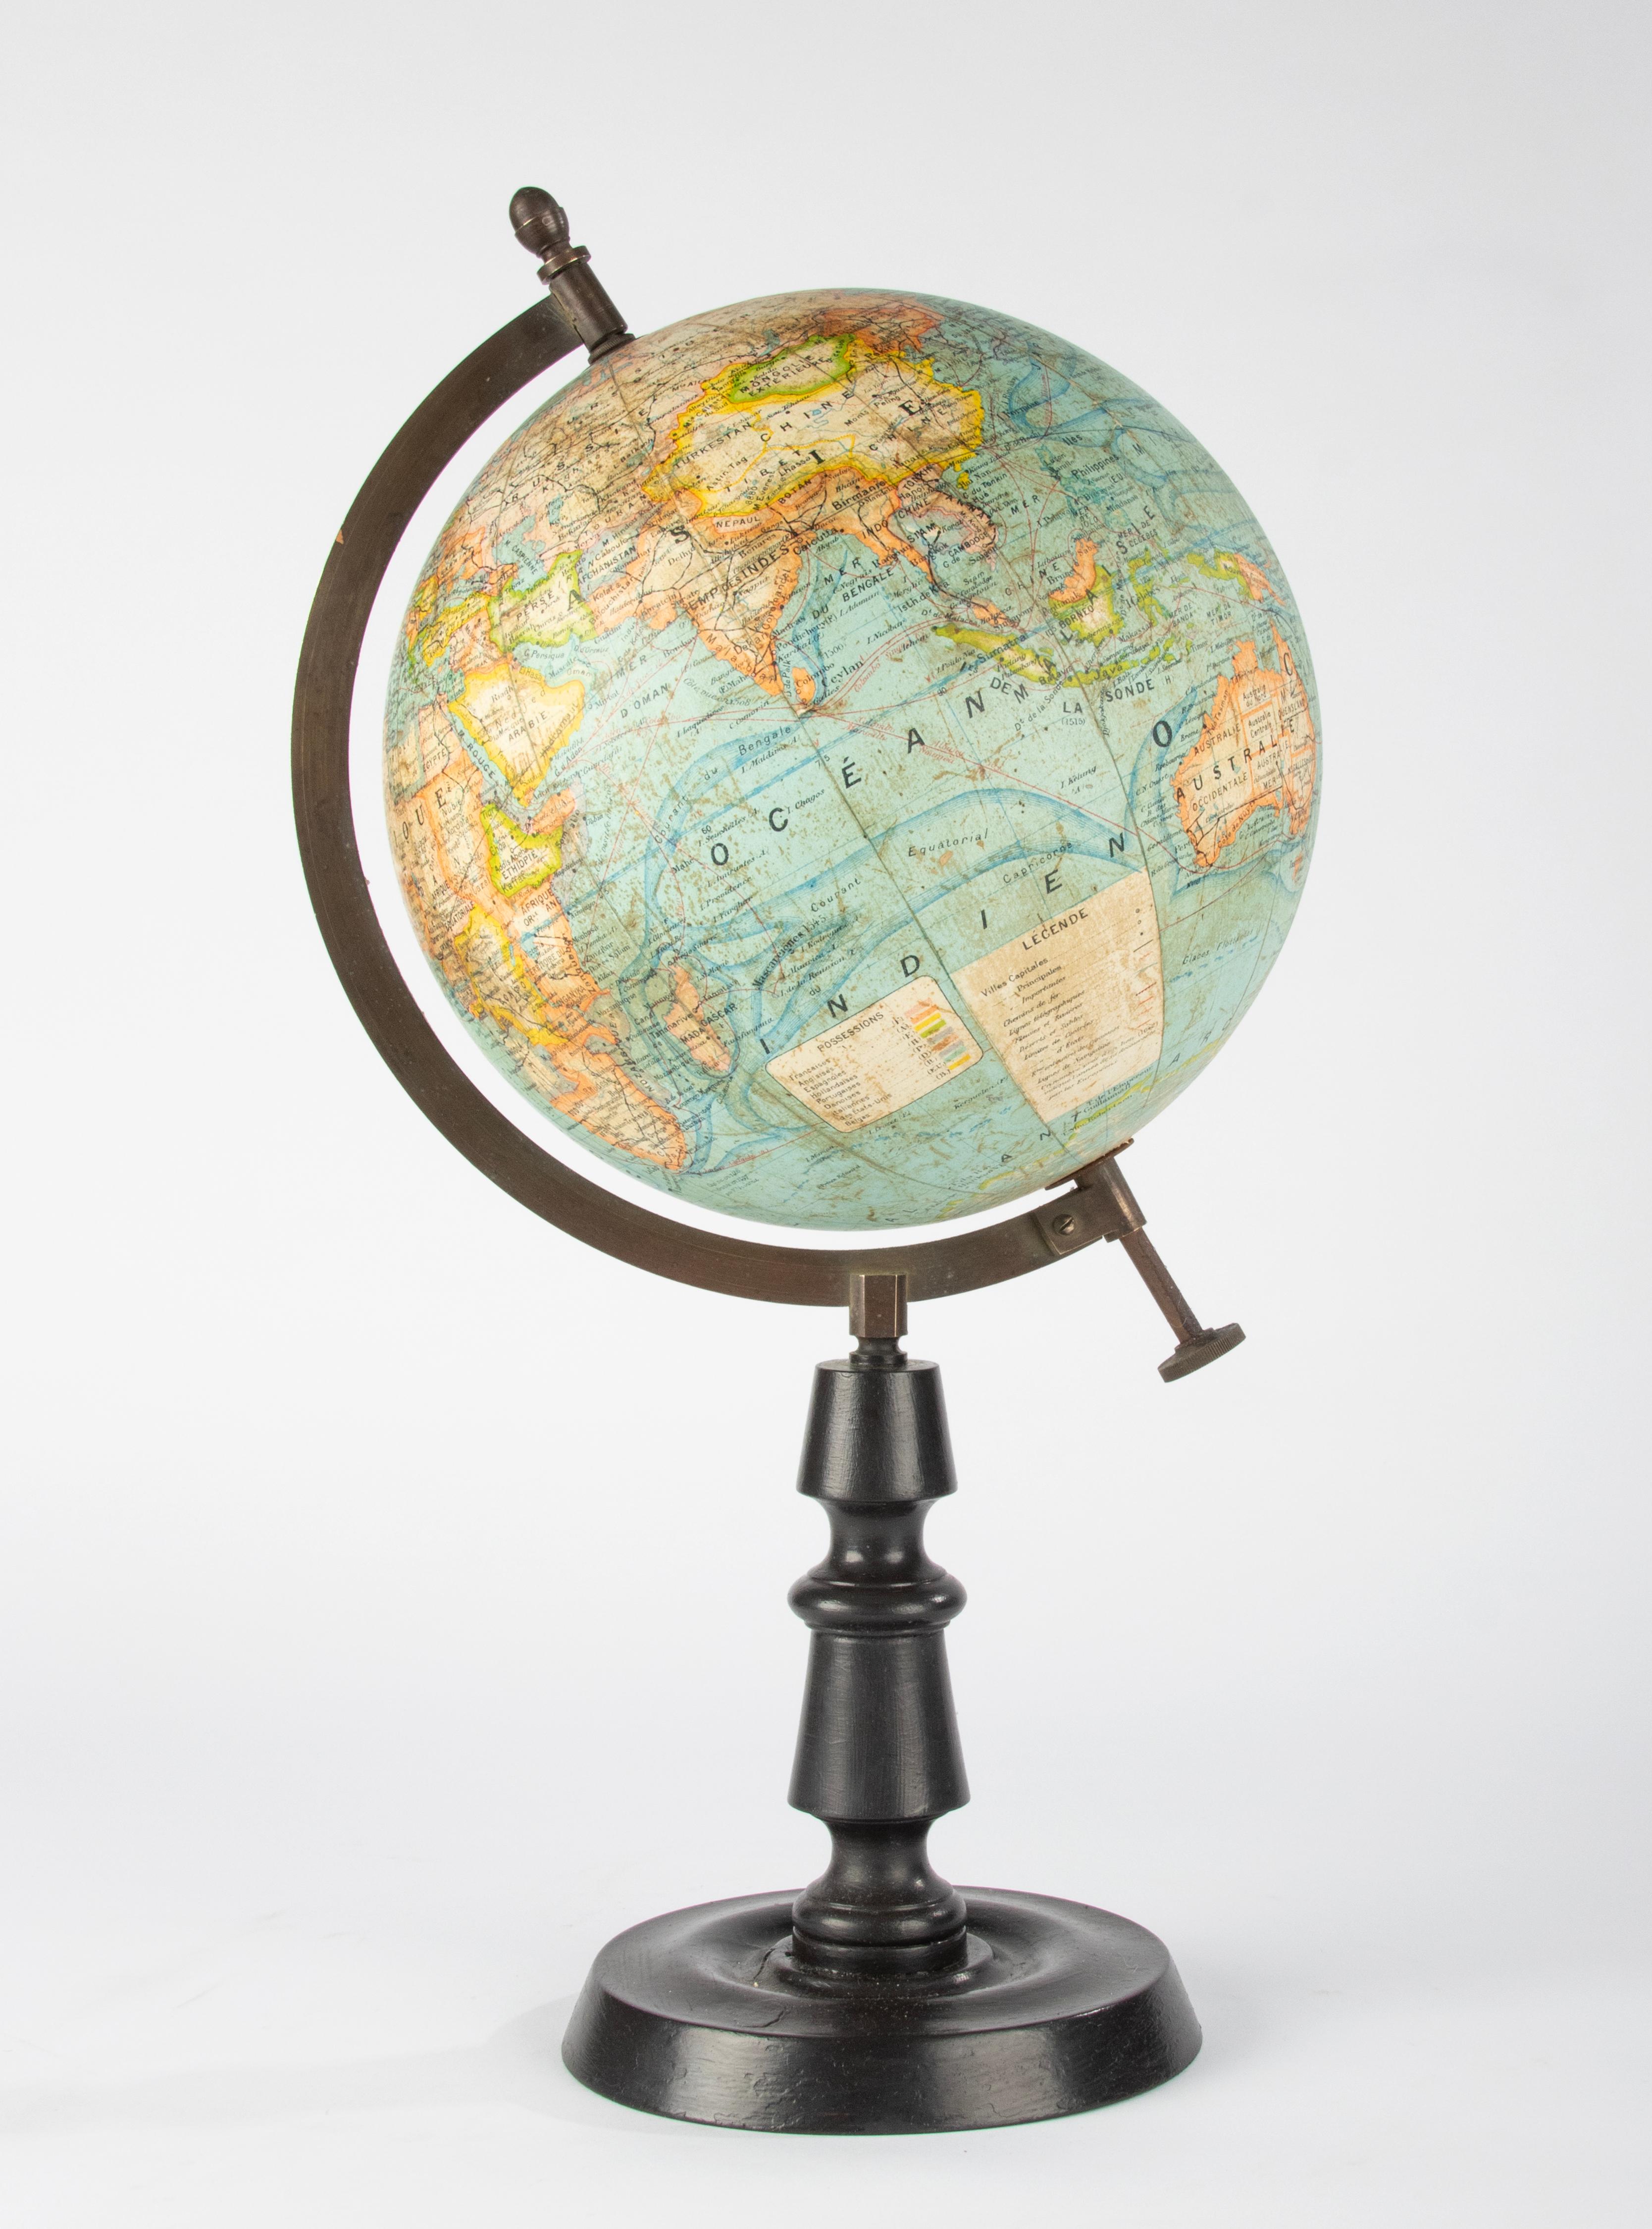 World Globe des späten 19. Jahrhunderts – herausgegeben von J. Forest Paris – Globe Terrestre (Belle Époque)